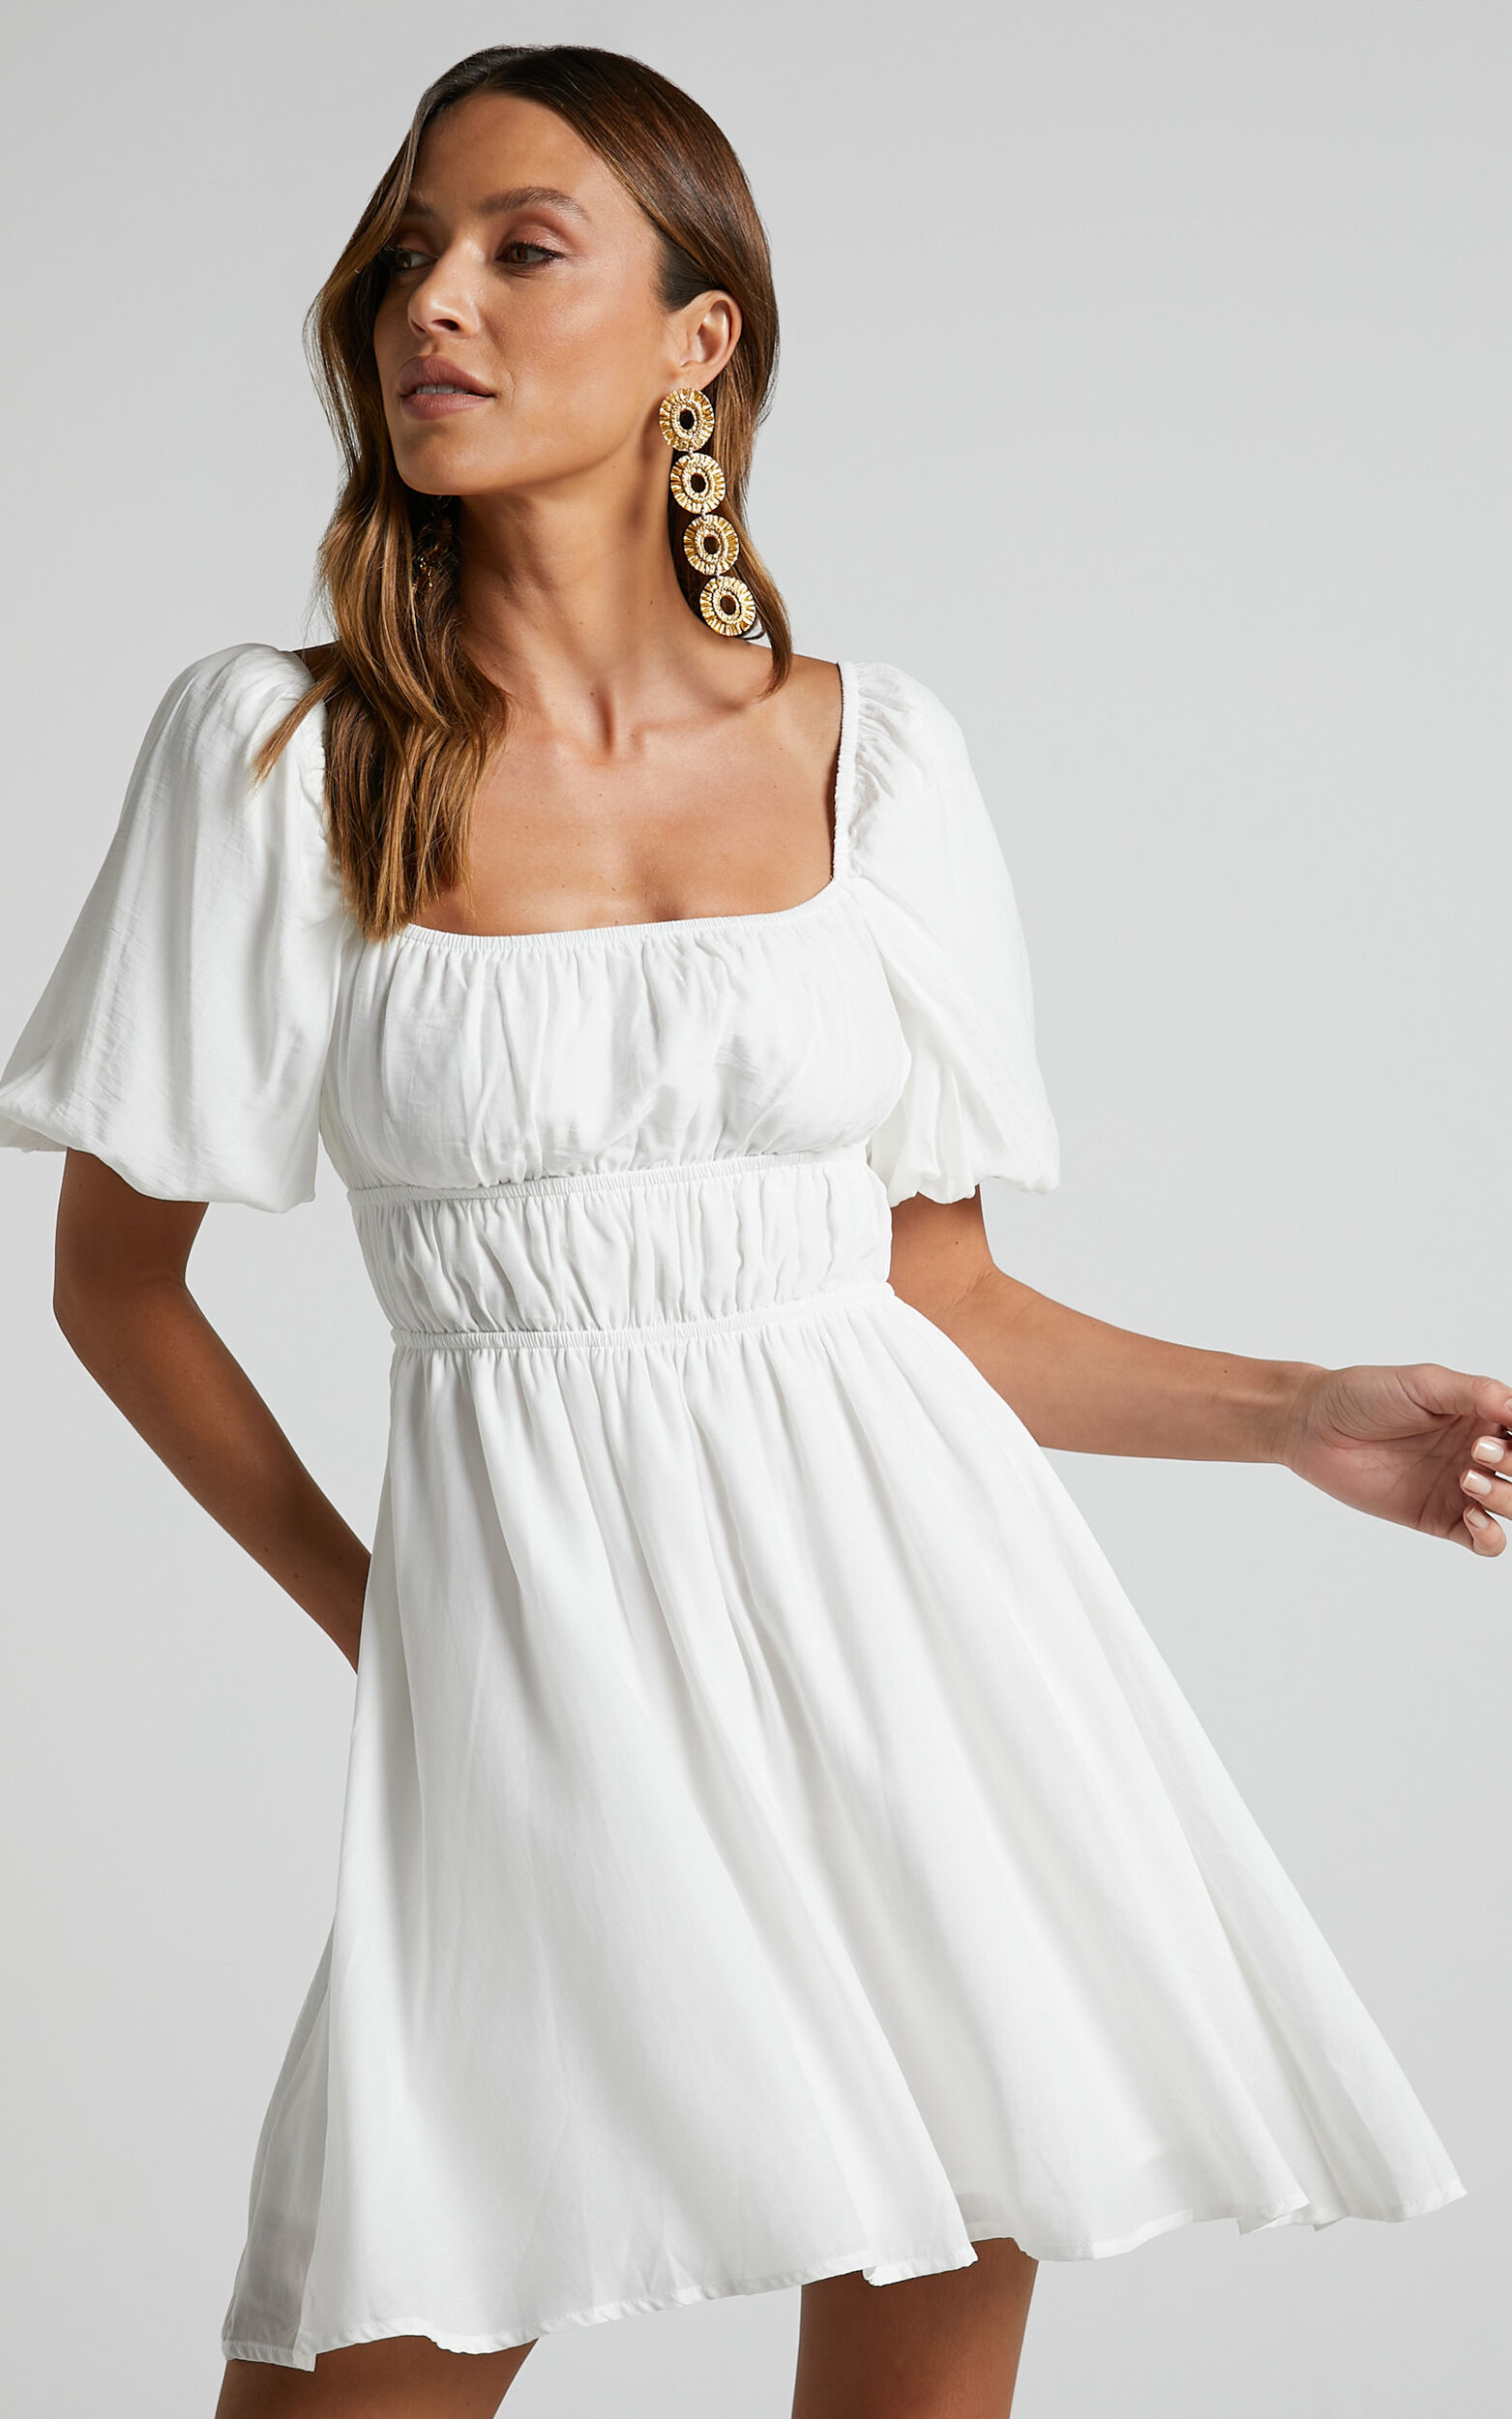 Maretta Mini Dress - Stretch Waist Square Neck Dress in White - 04, WHT1